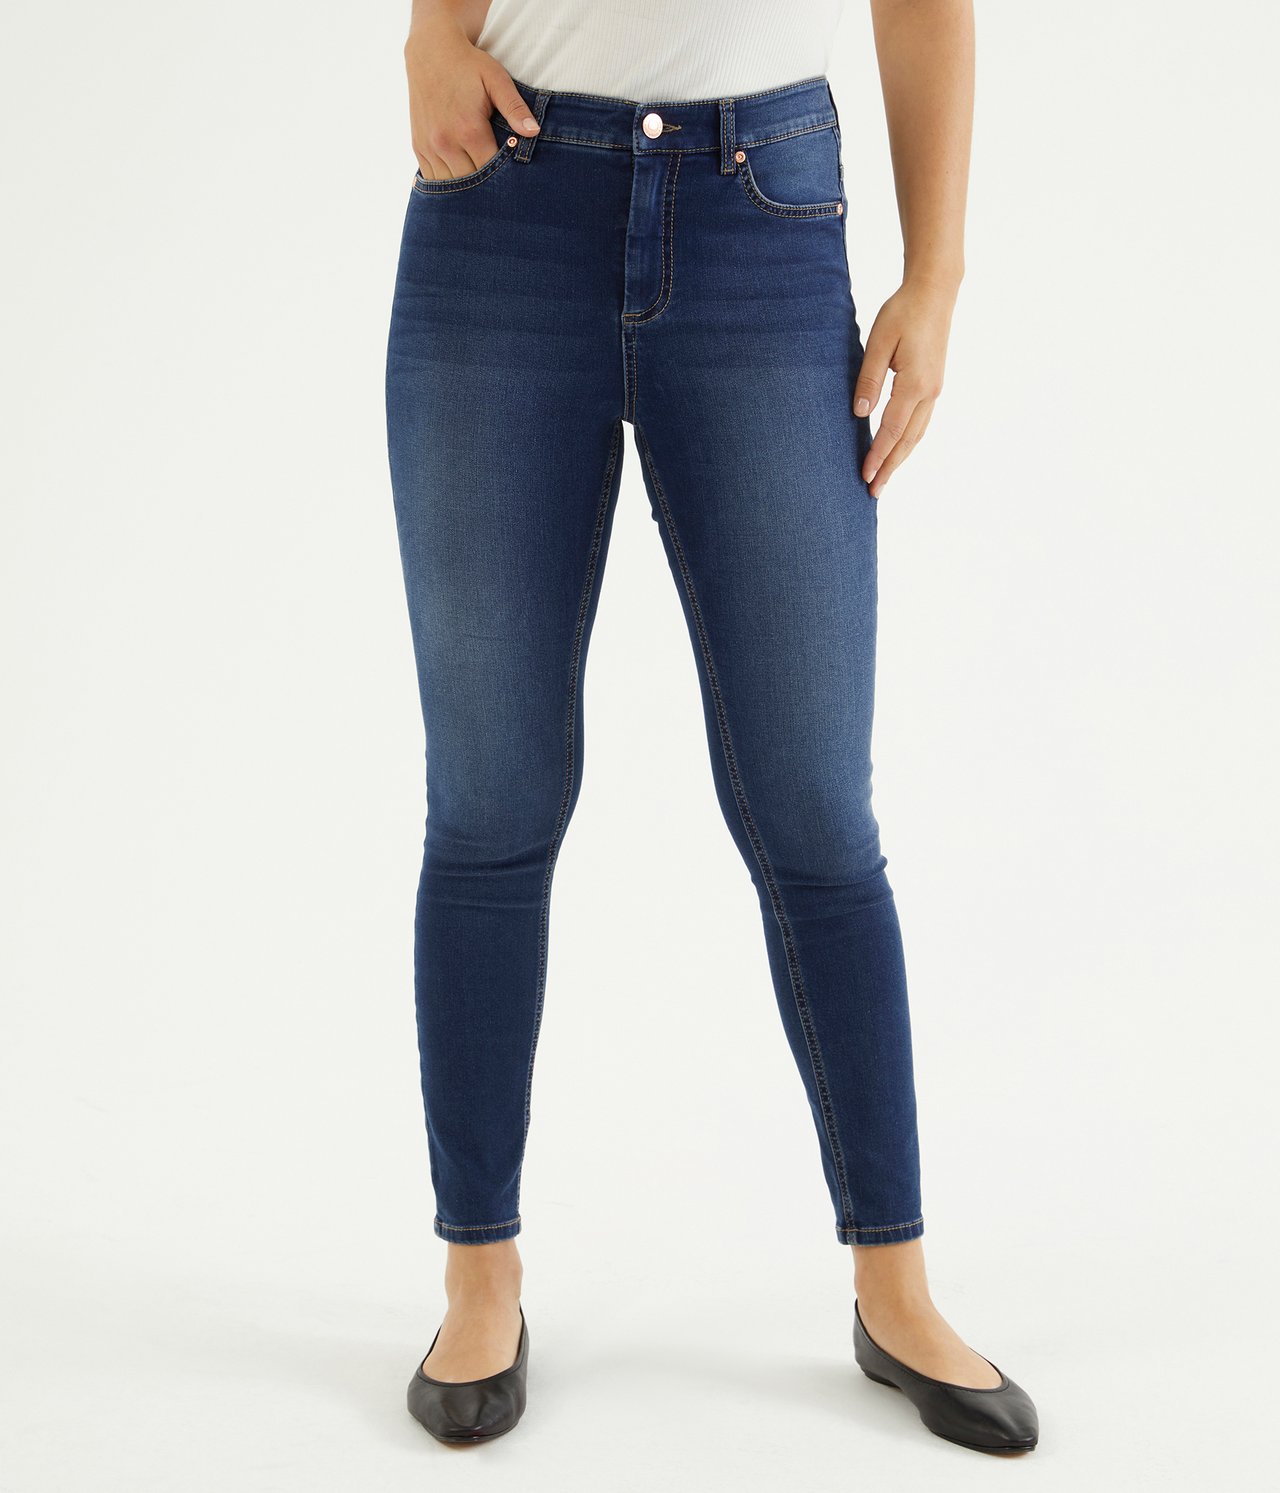 Super slim jeans short leg Mørk denim - null - 4